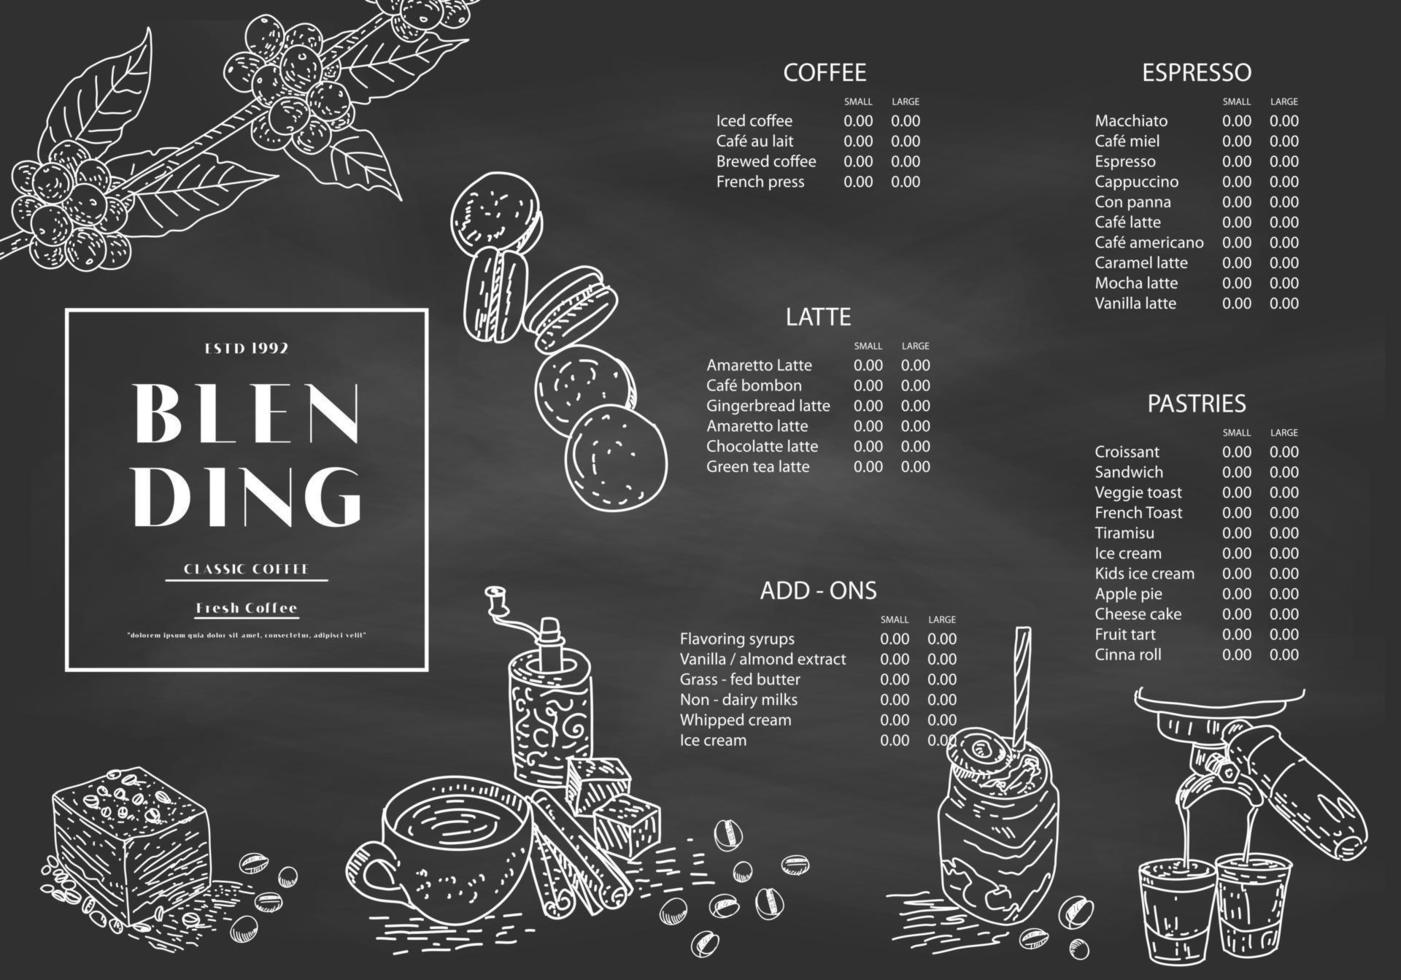 illustrazione del caffè per poster o modello di menu. vettore